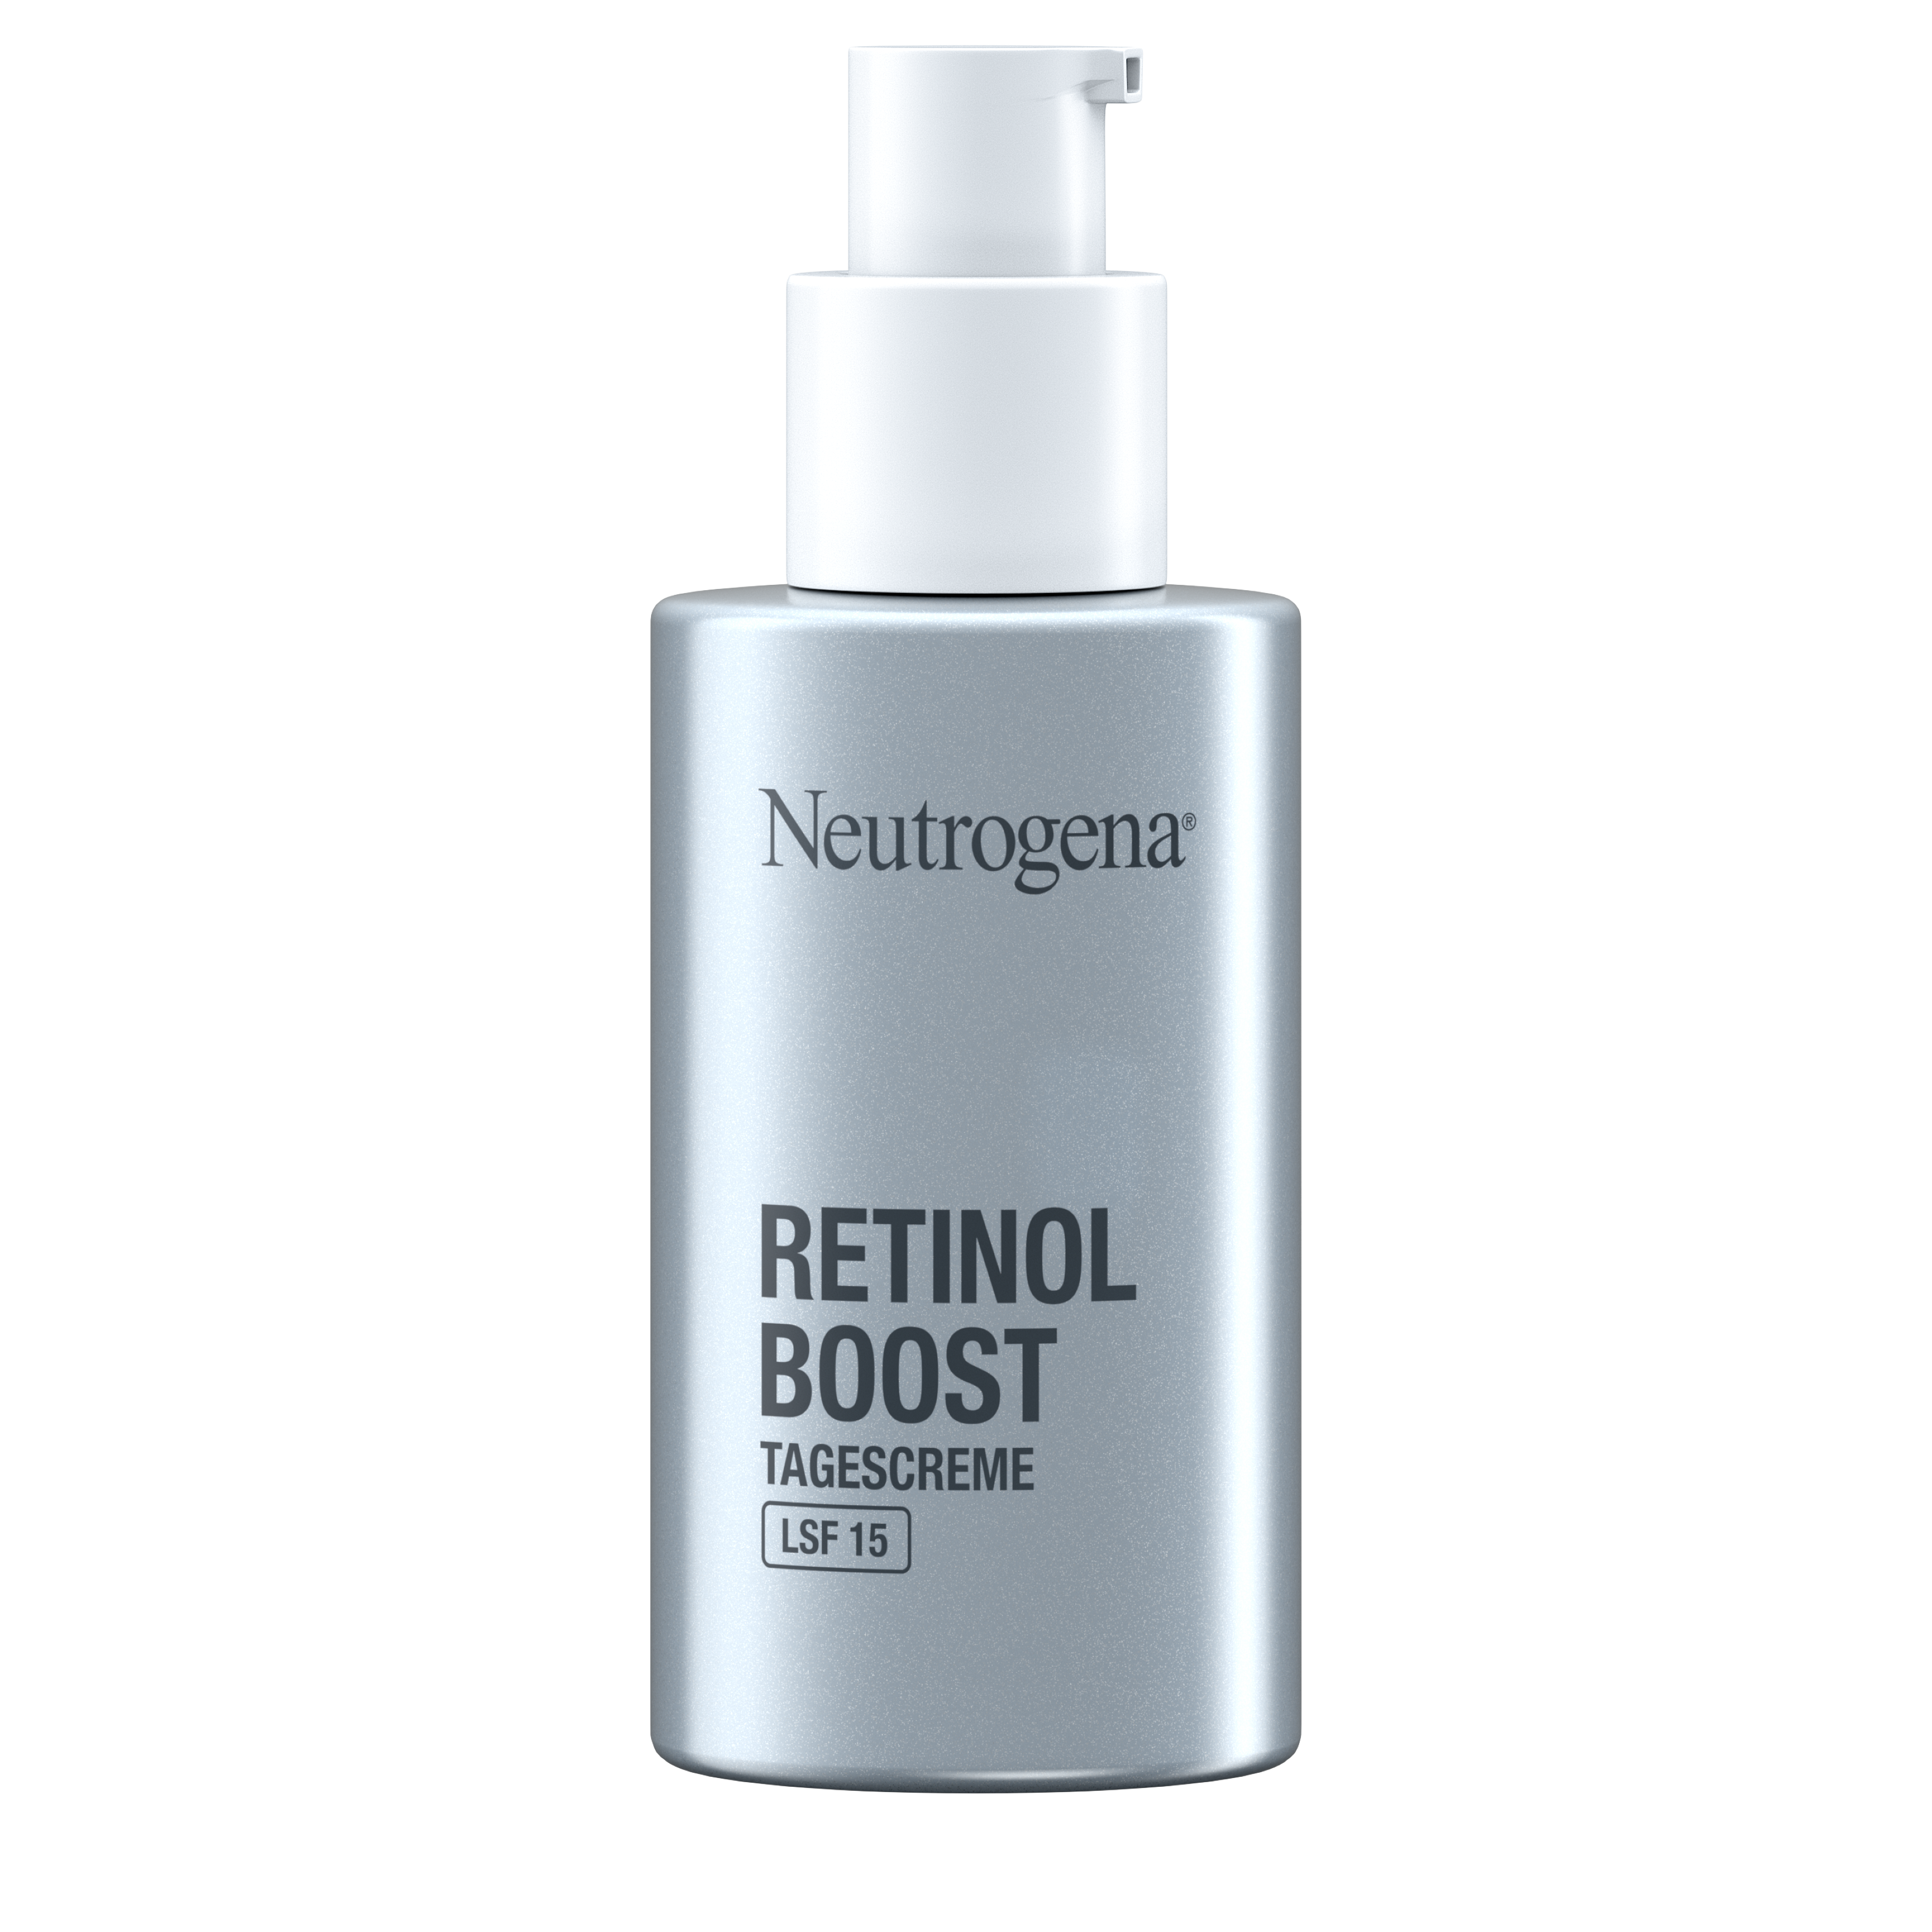 Neutrogena® Retinol Boost Tagescreme LSF 15, 50 ml, UVP* 13,99 €